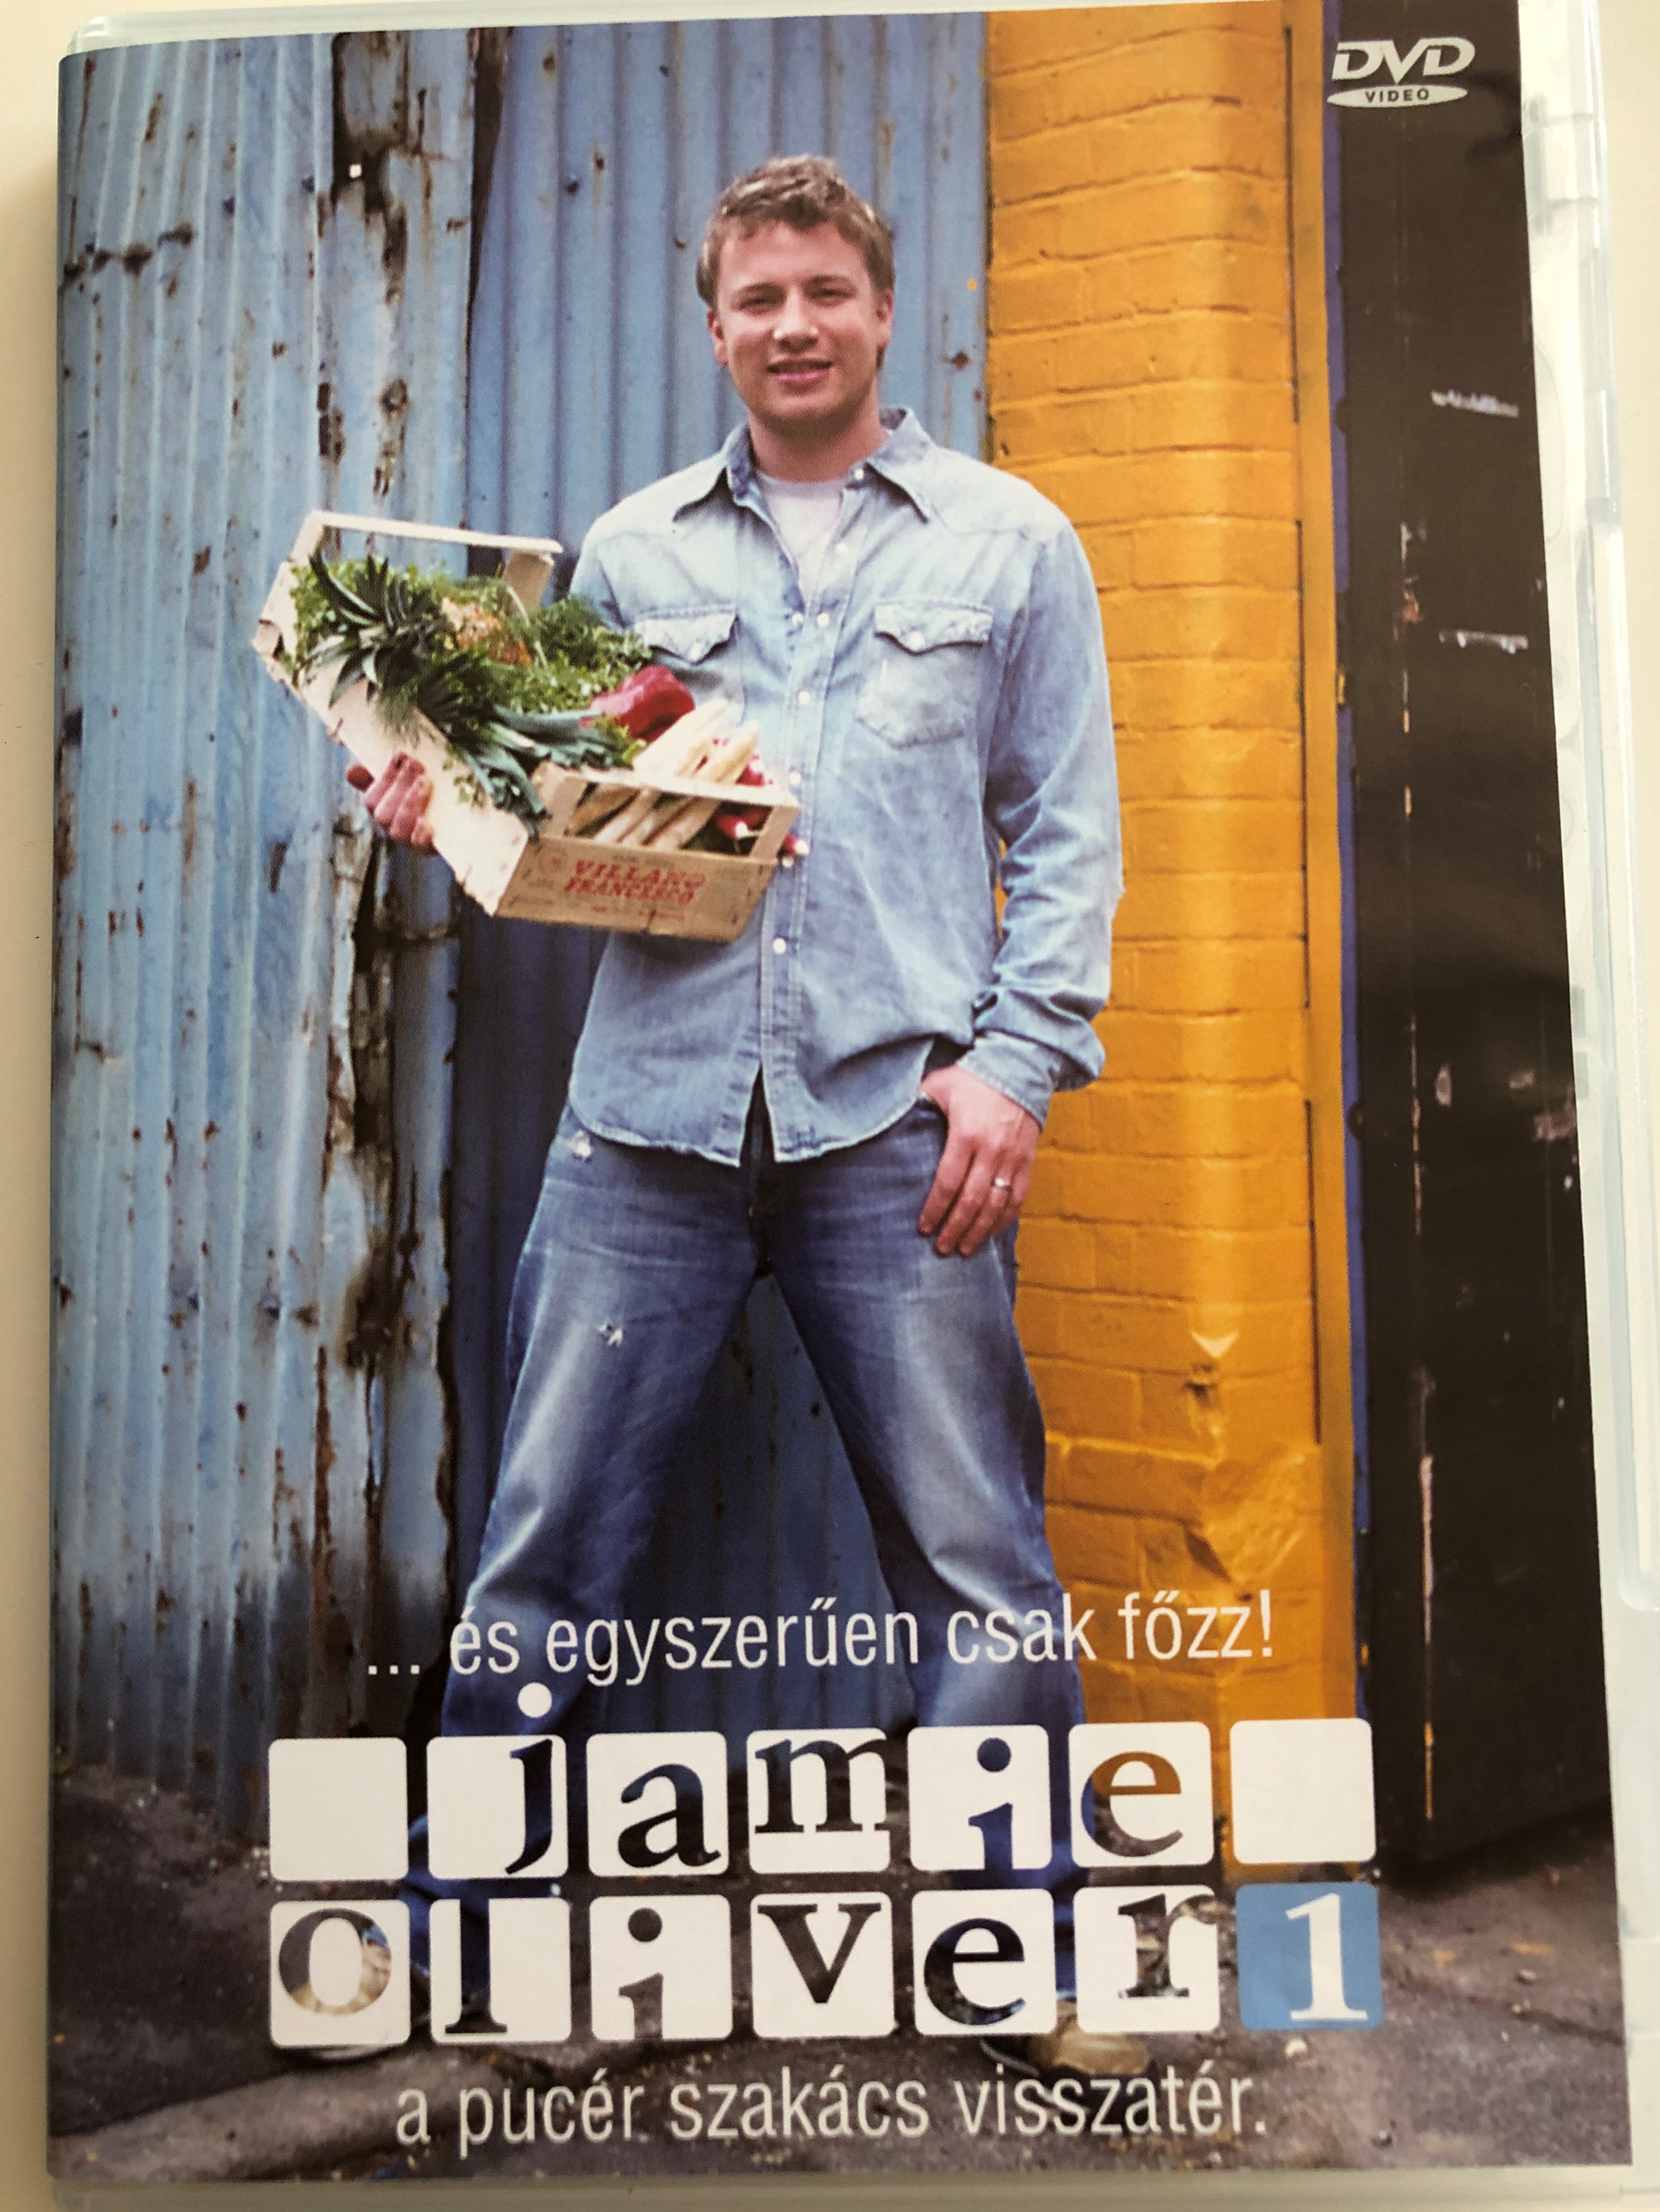 Oliver's Twist DVD 2002 Jamie Oliver vol. 1 / A pucér szakács visszatér /  Főzzünk megint egyszerűen! / Directed by Brian Klein / 3 episodes / Cooking  with Jamie Oliver - Bible in My Language